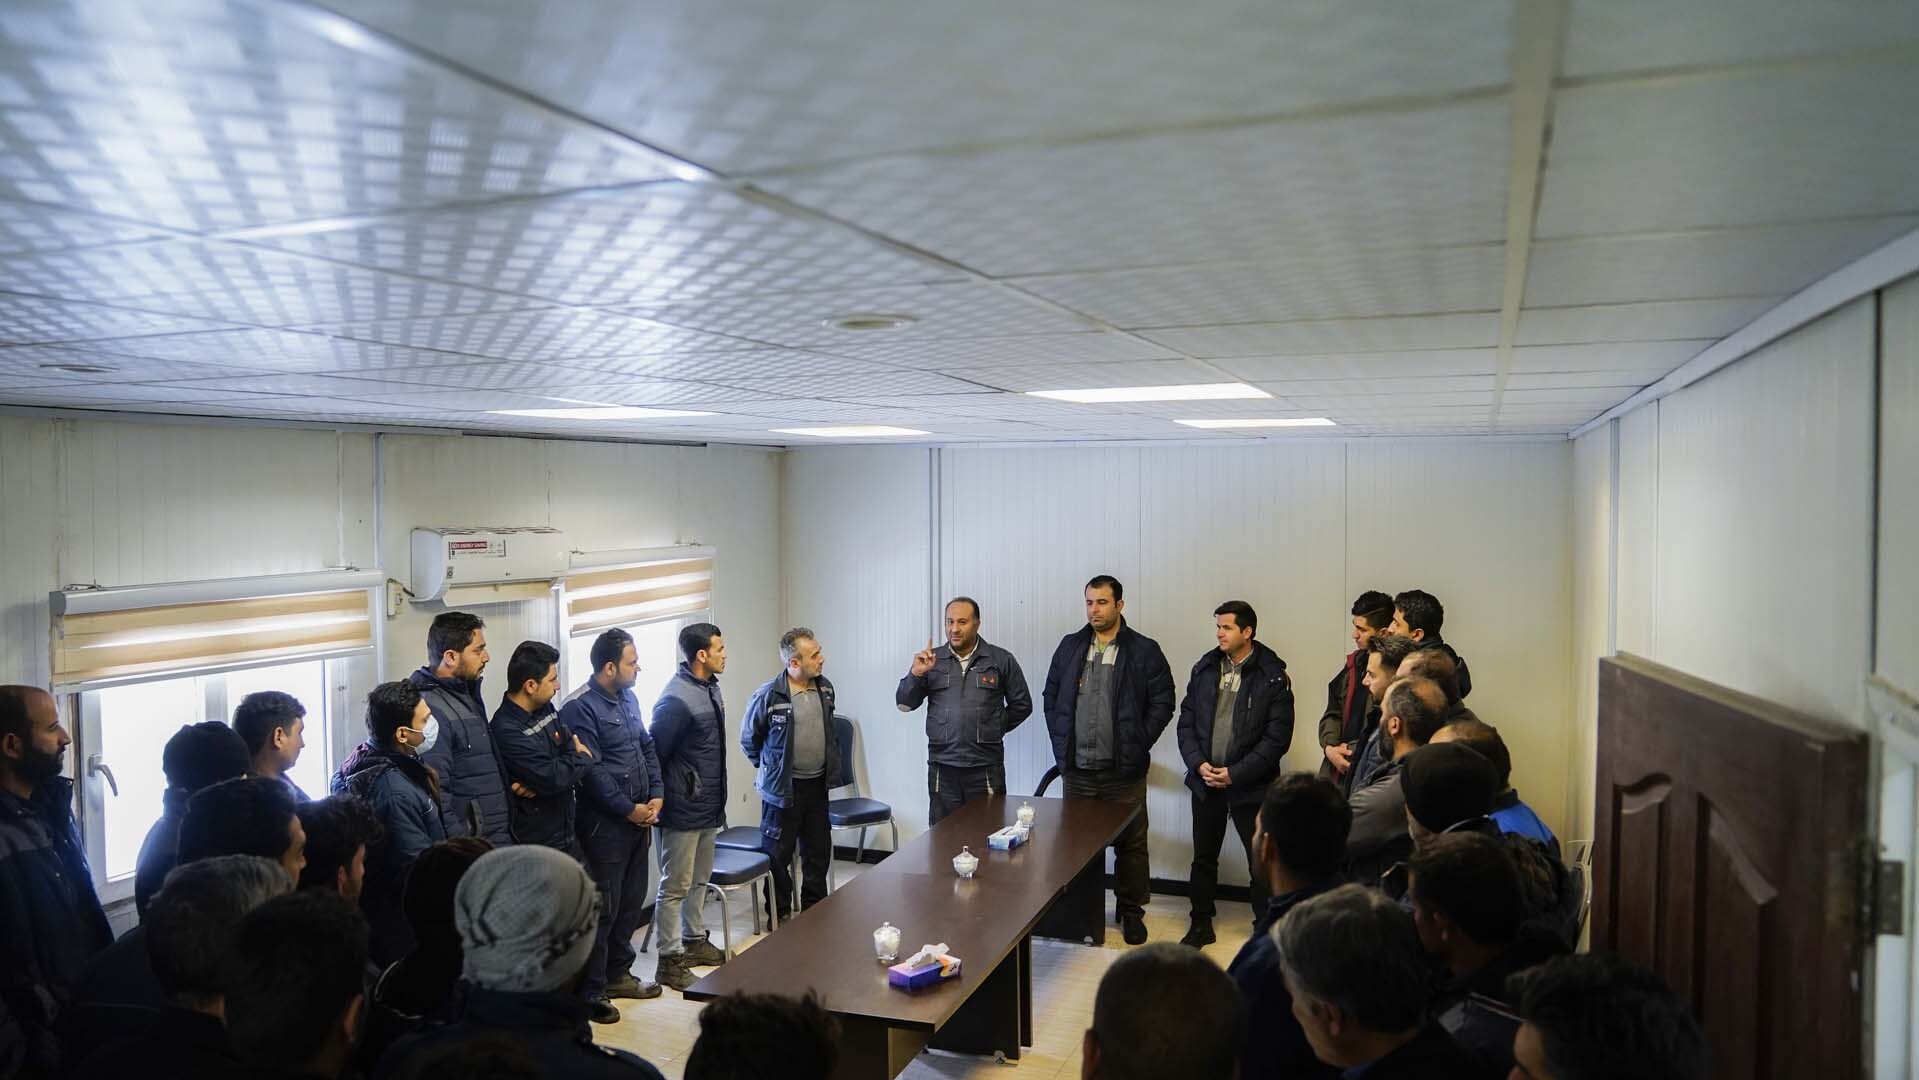 دیدار صمیمی مدیران سیمیدکو با کارگران و کارکنان کارخانه سنگ شکن